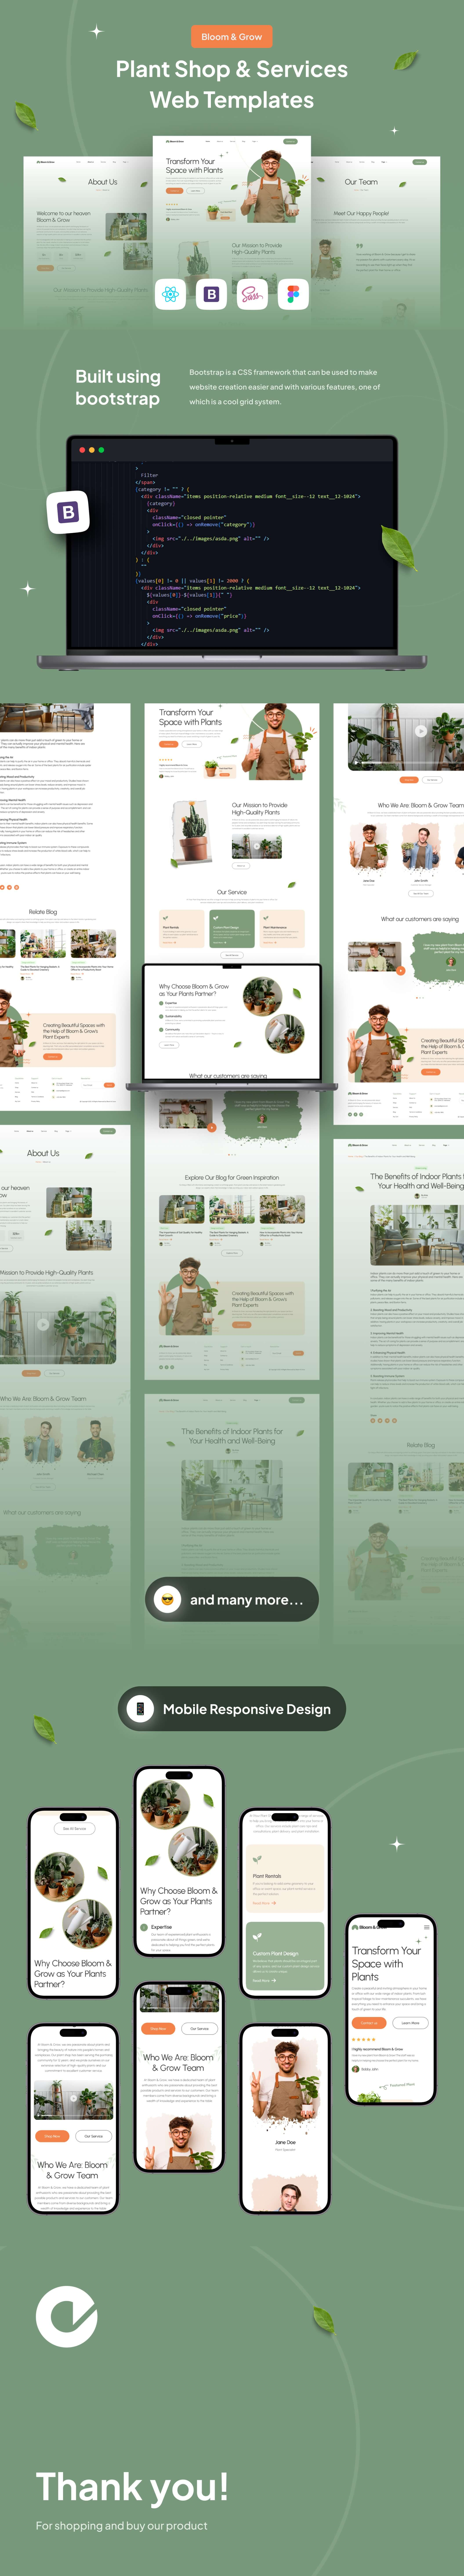 绿色系响应式园林园艺公司企业官网网站设计WEB UI界面设计 .fig素材